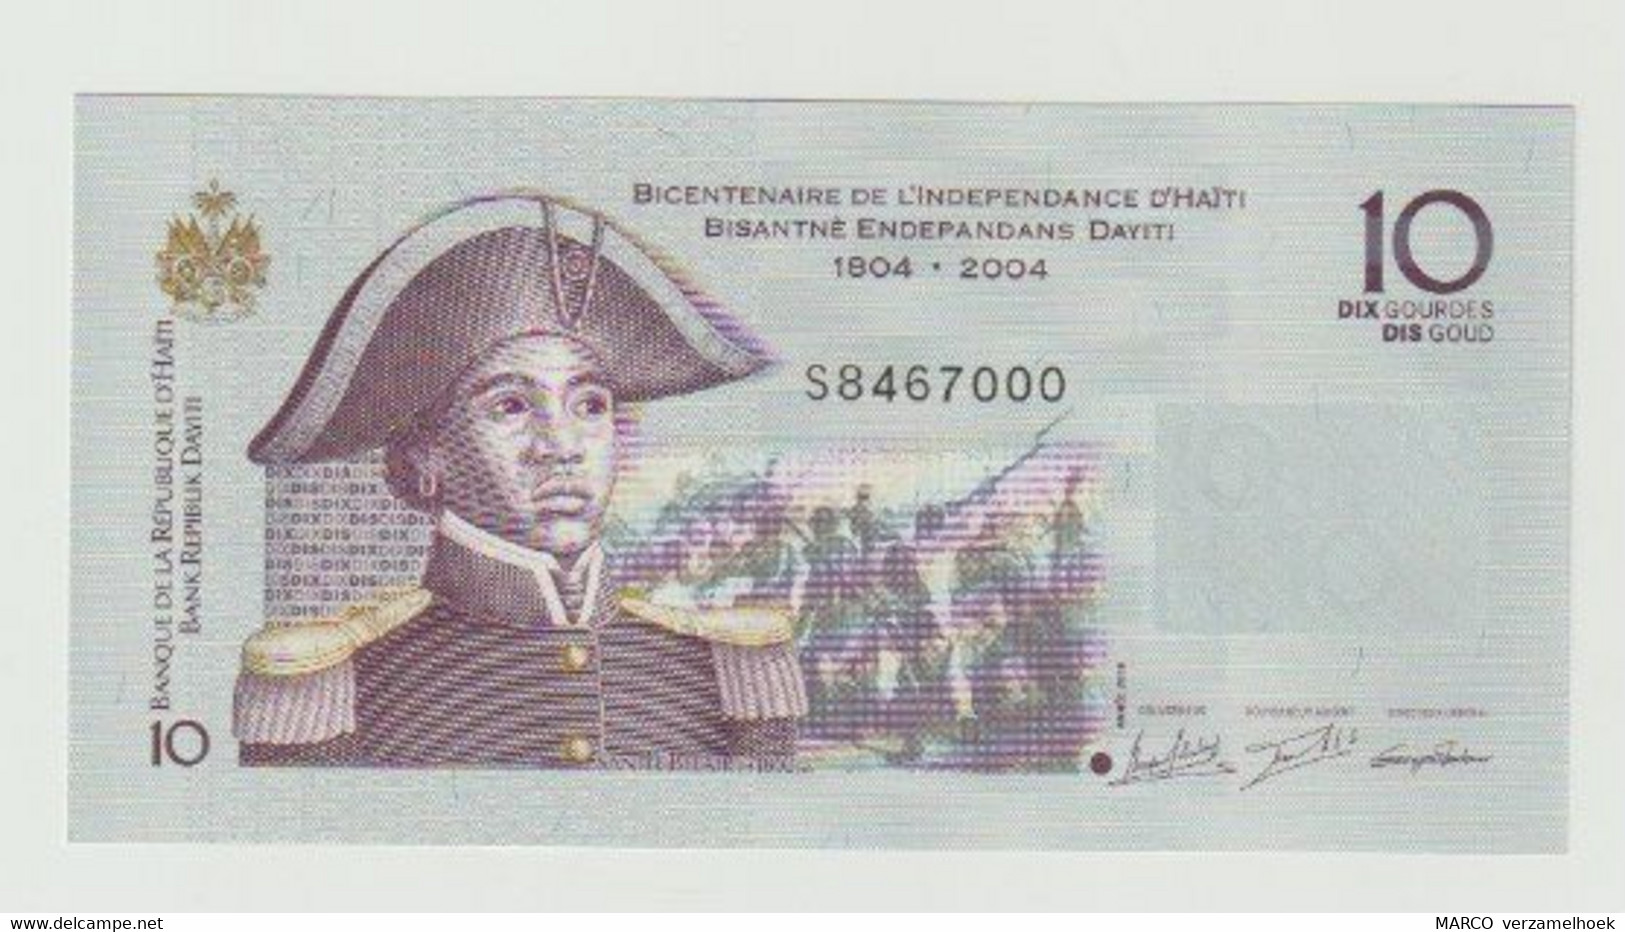 Banknote Bicentenaire De L'independance D'Haïti 10 Gourdes-goud 2016 UNC - Haiti